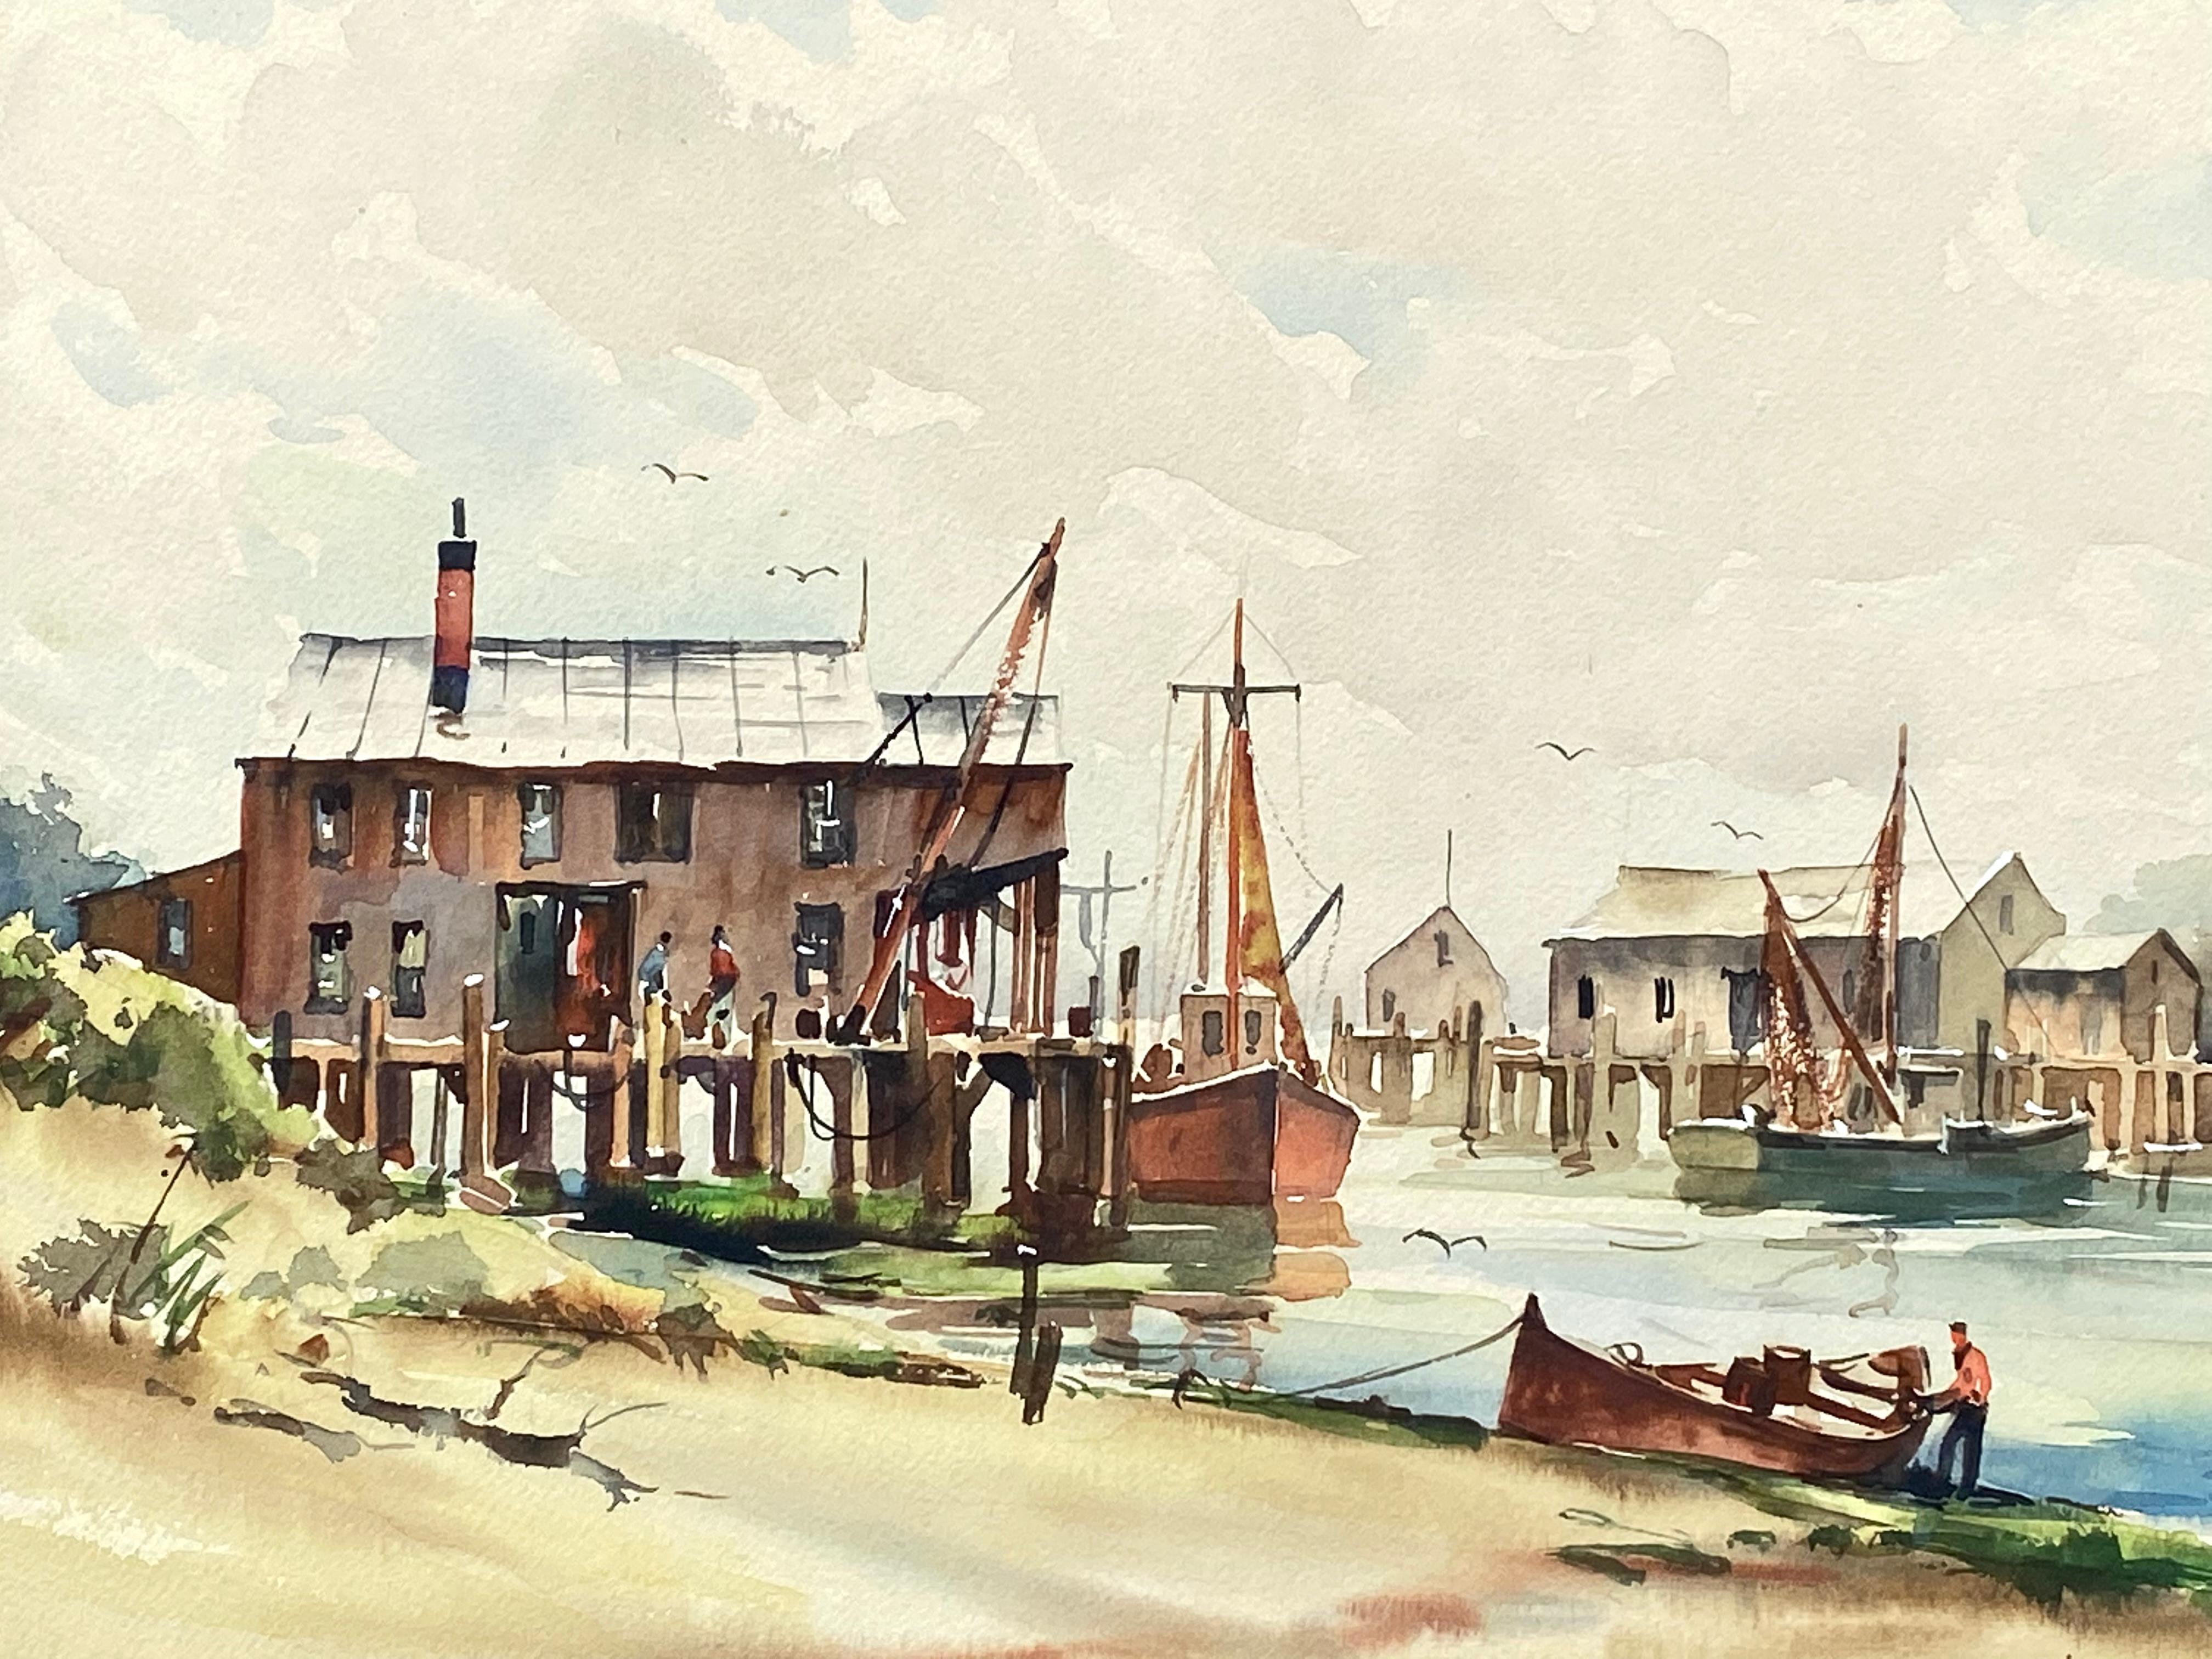 Docks de pêche au Cap - Post-impressionnisme Art par John Cuthbert Hare